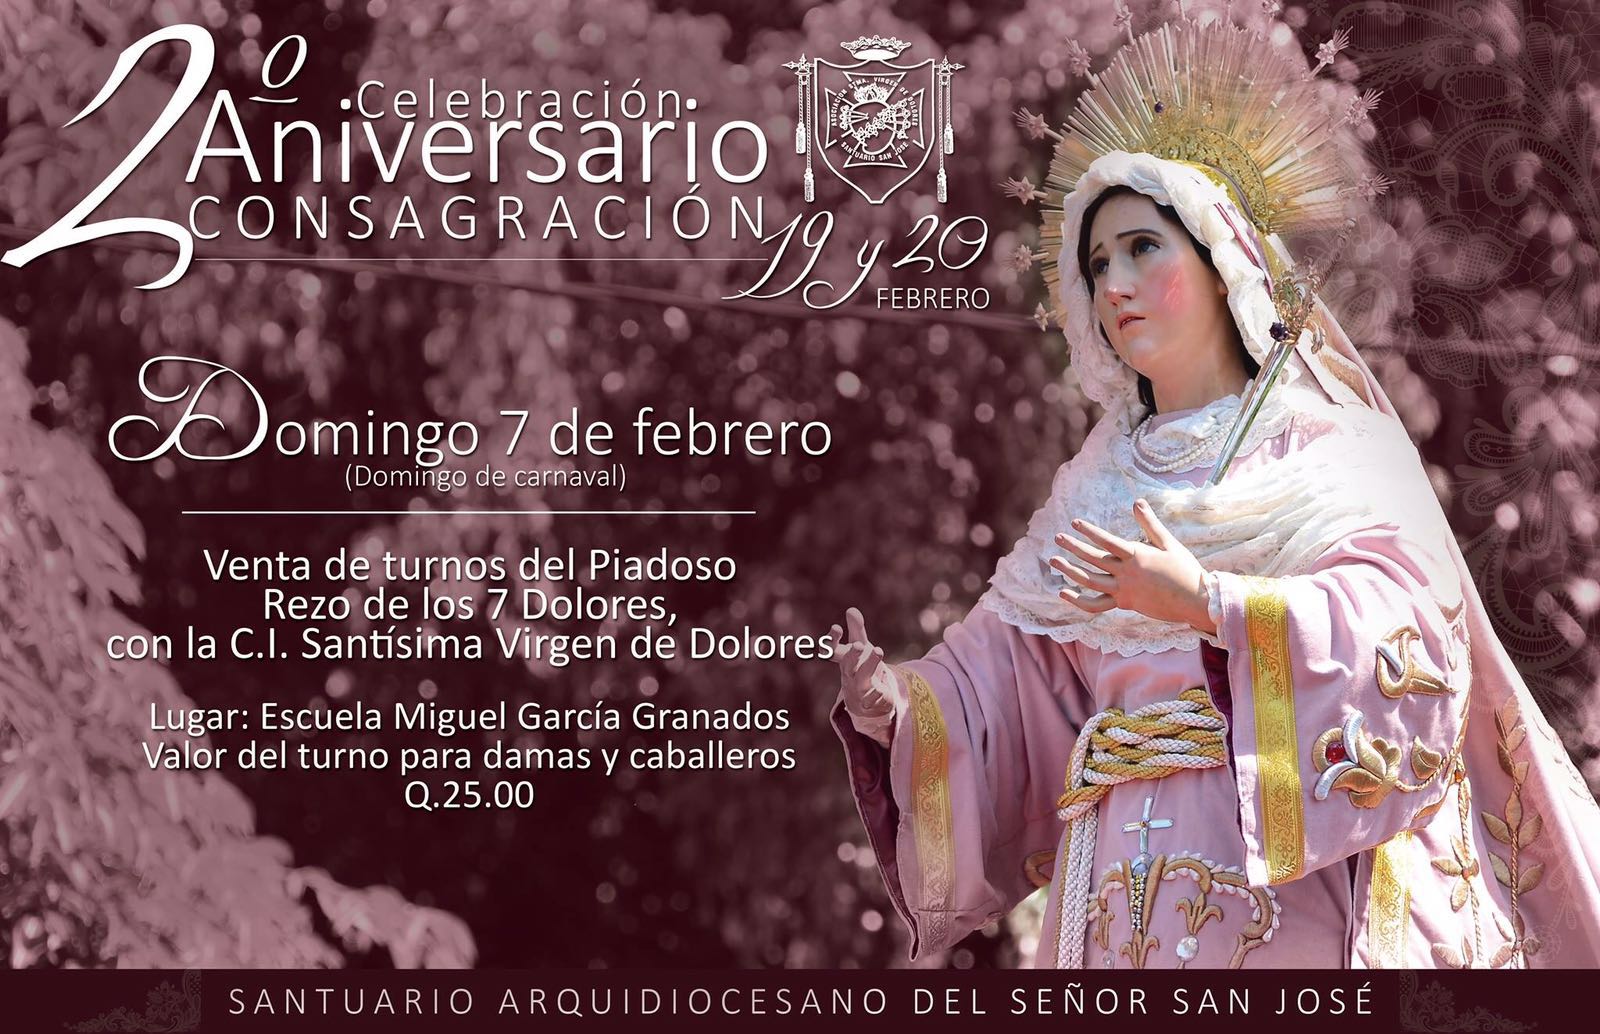 Aniversario Consagracion Virgen de Dolores San Jose